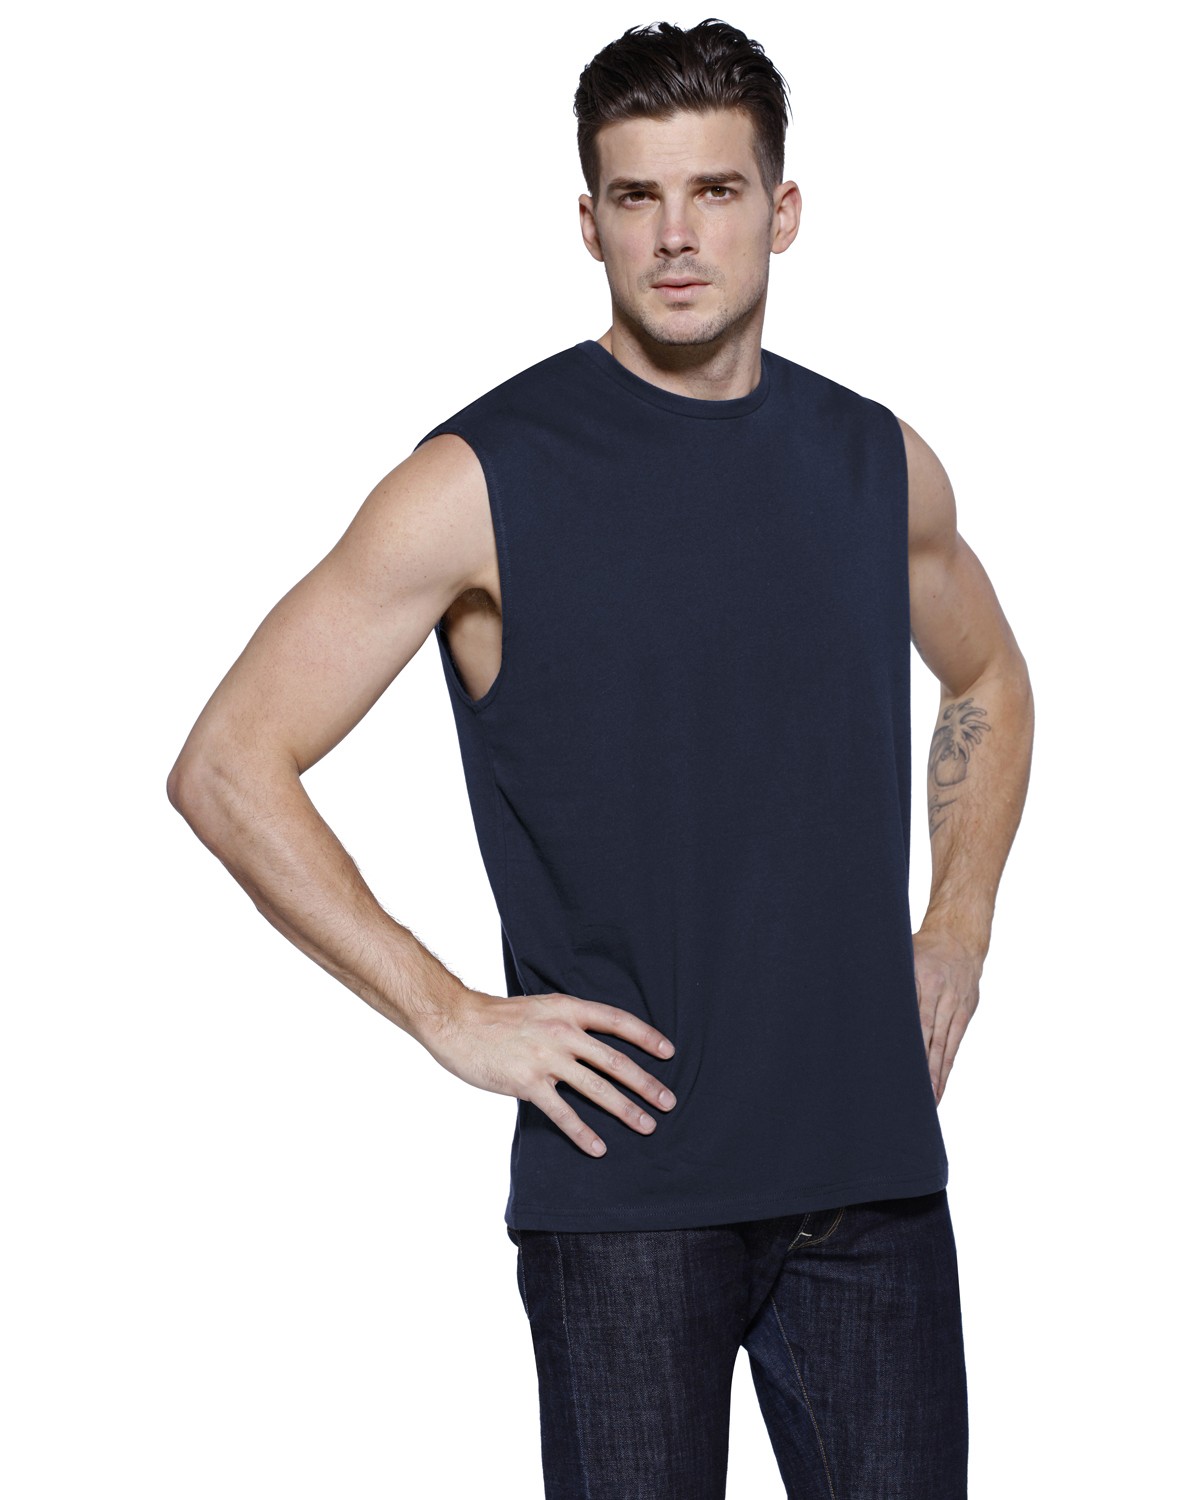 StarTee ST2150 Men's Cotton Muscle T-Shirt